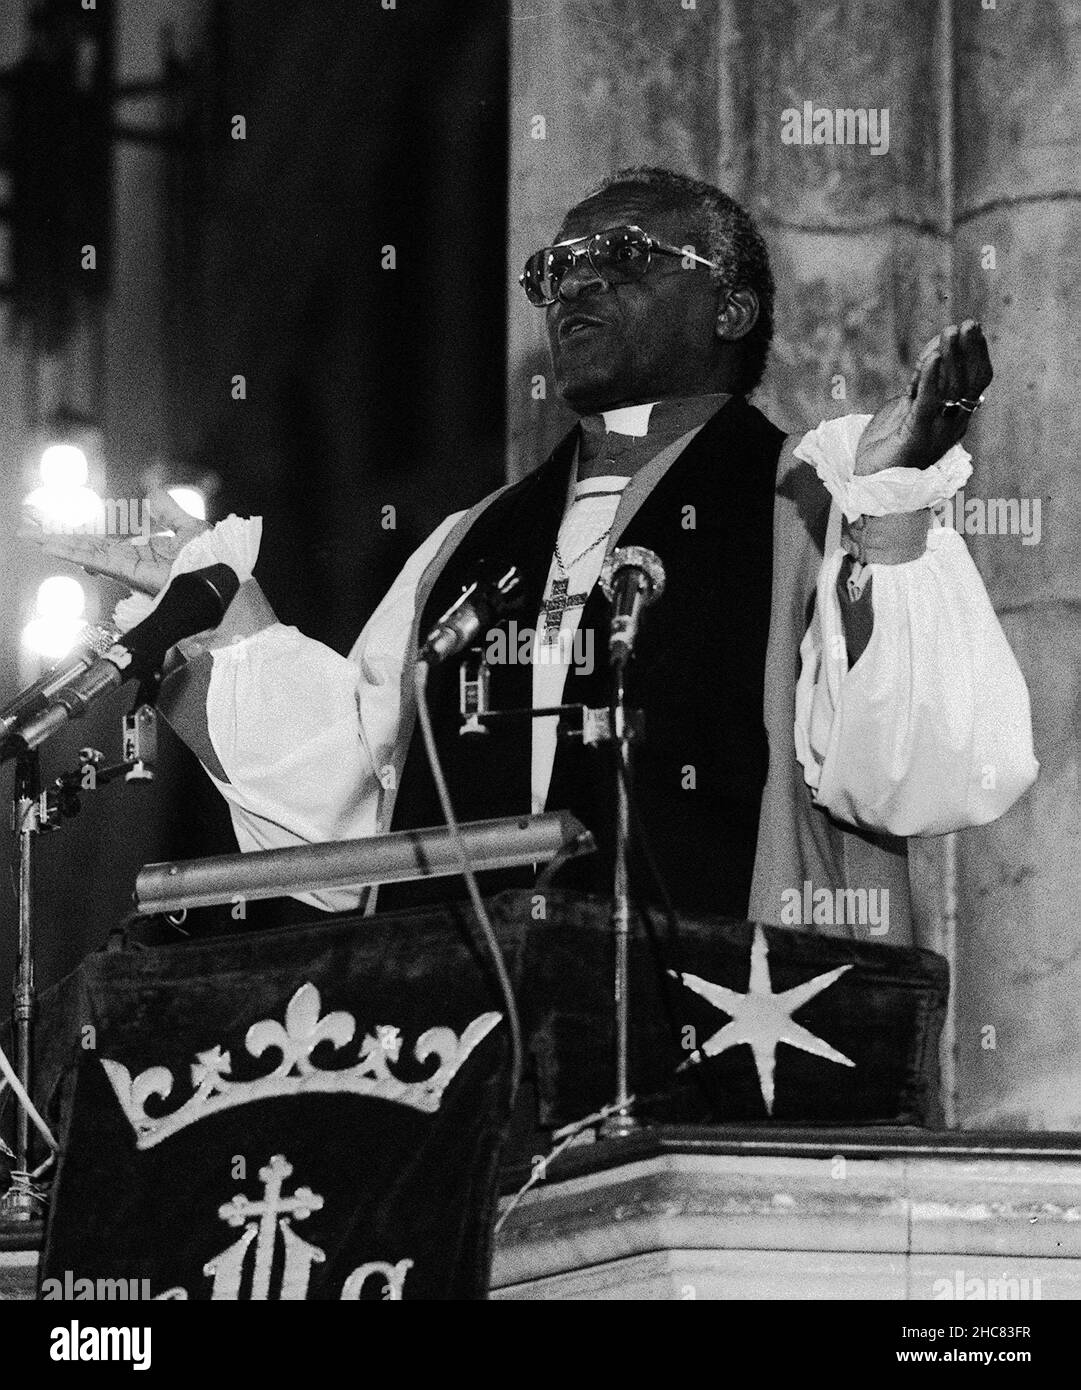 Foto del archivo fechada el 01/02/89 de Desmond Tutu predicando en la Iglesia de la Santísima Trinidad, Hull. Desmond Tutu, el activista por la justicia racial y los derechos LGBT ganador del Premio Nobel de la Paz, ha fallecido a los 90 años. Había sido tratado en el hospital varias veces desde 2015, después de ser diagnosticado con cáncer de próstata en 1997. Fecha de emisión: Domingo 26 de diciembre de 2021. Foto de stock